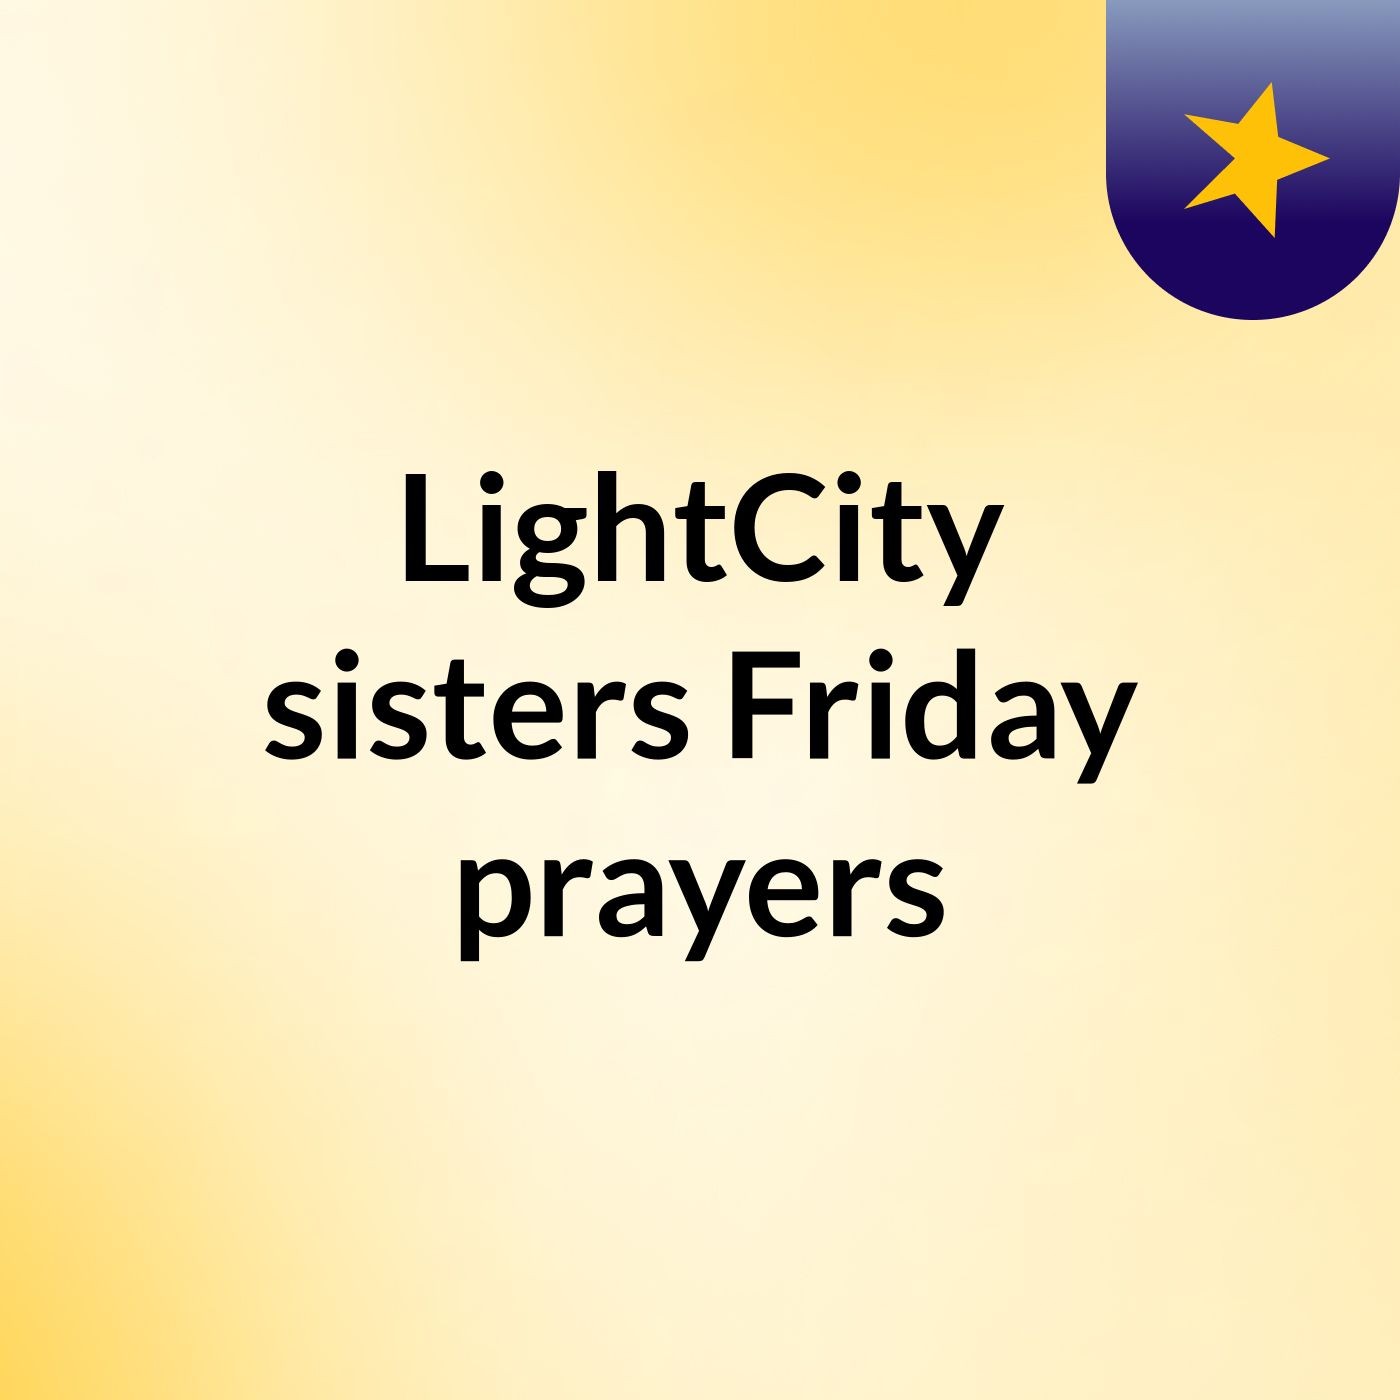 Episode 2 - LightCity sisters Friday prayers